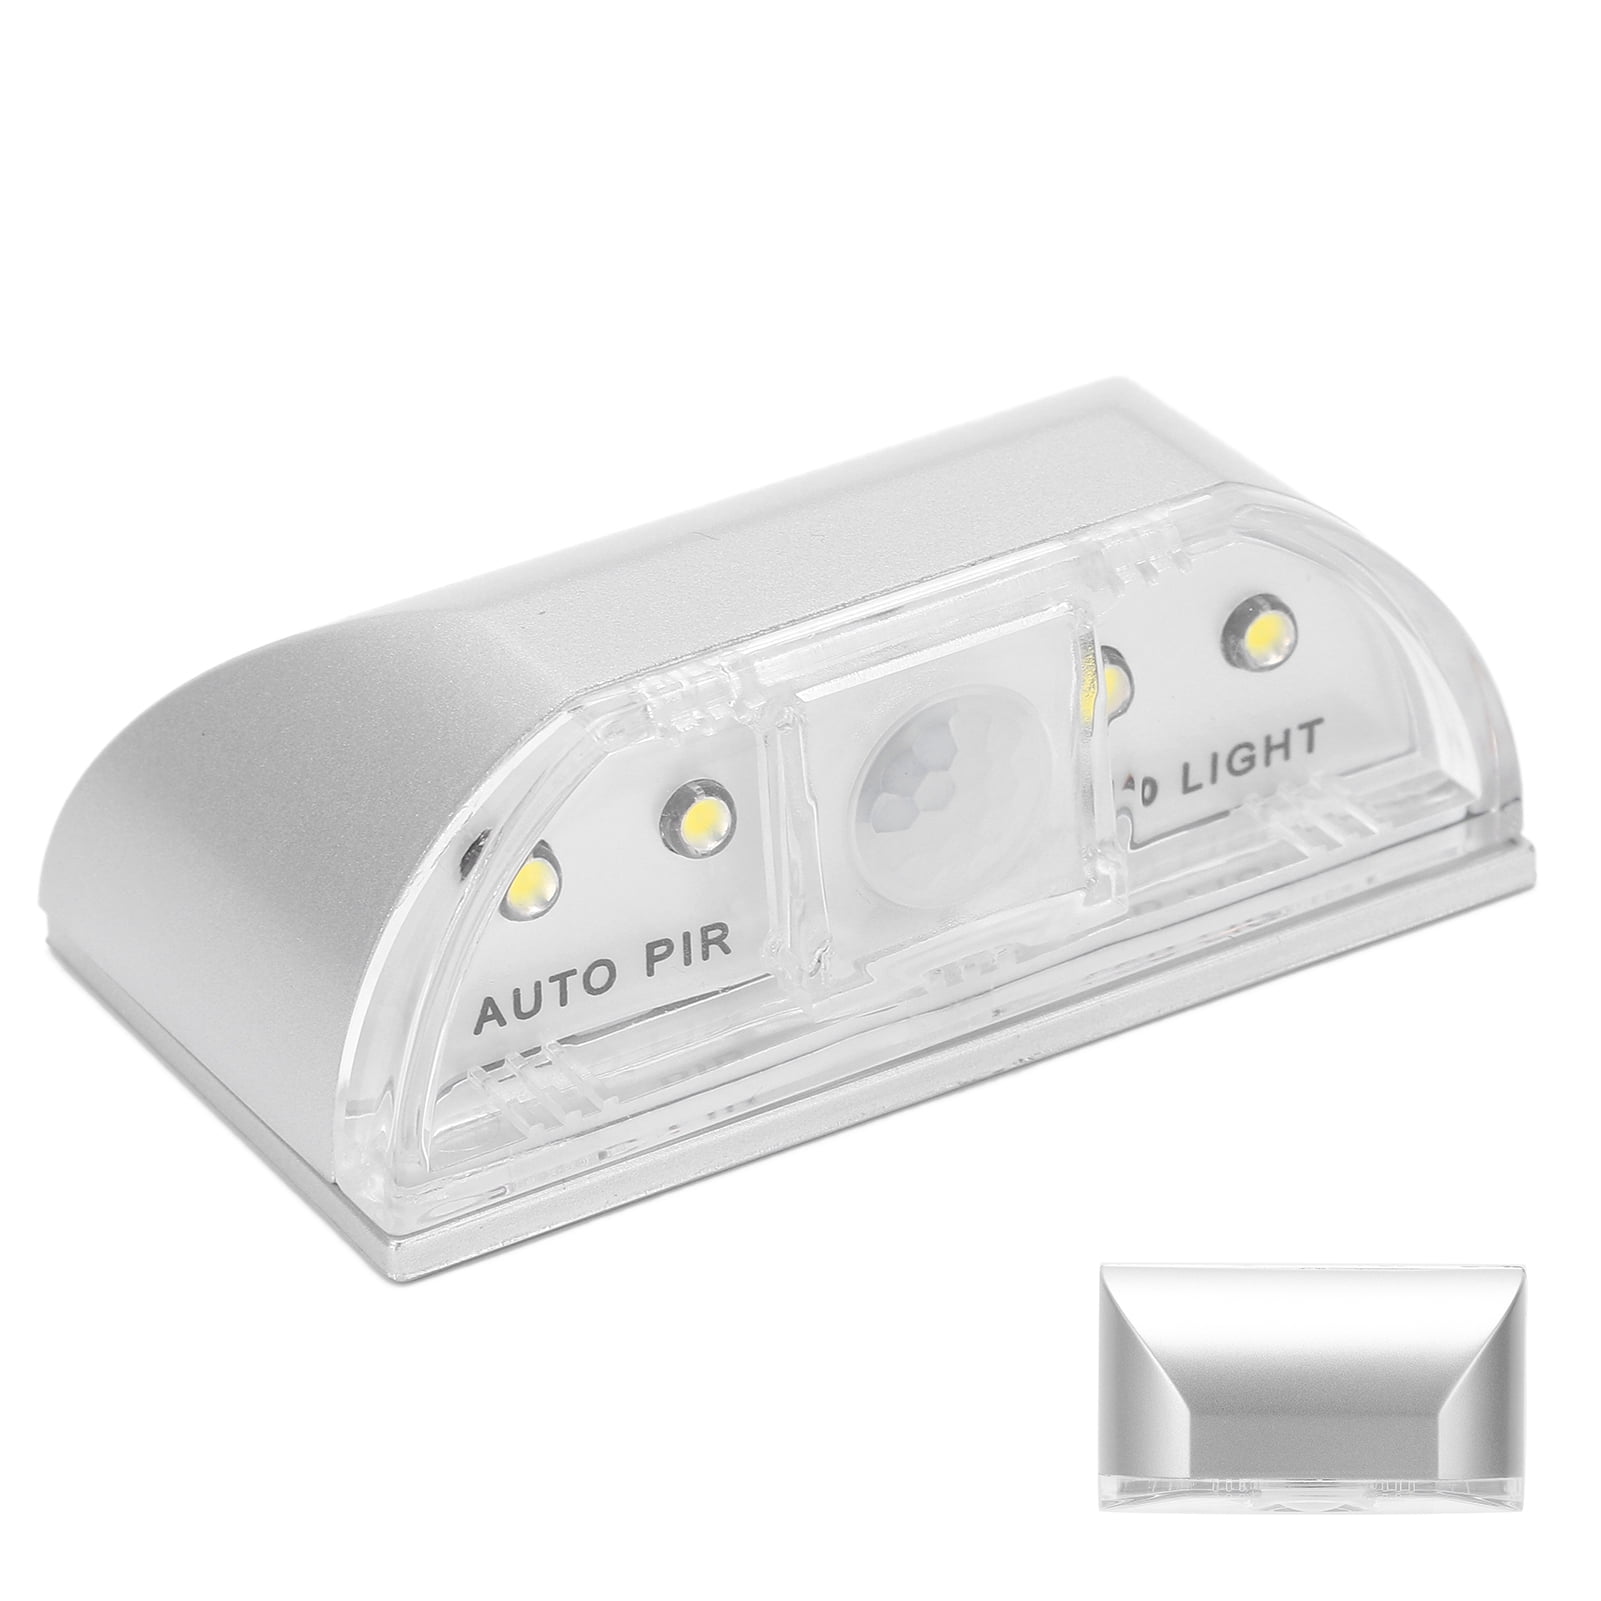 4 LED PIR Motion Sensor Door Lock Night Light Body Human Infrared Lamp For Home